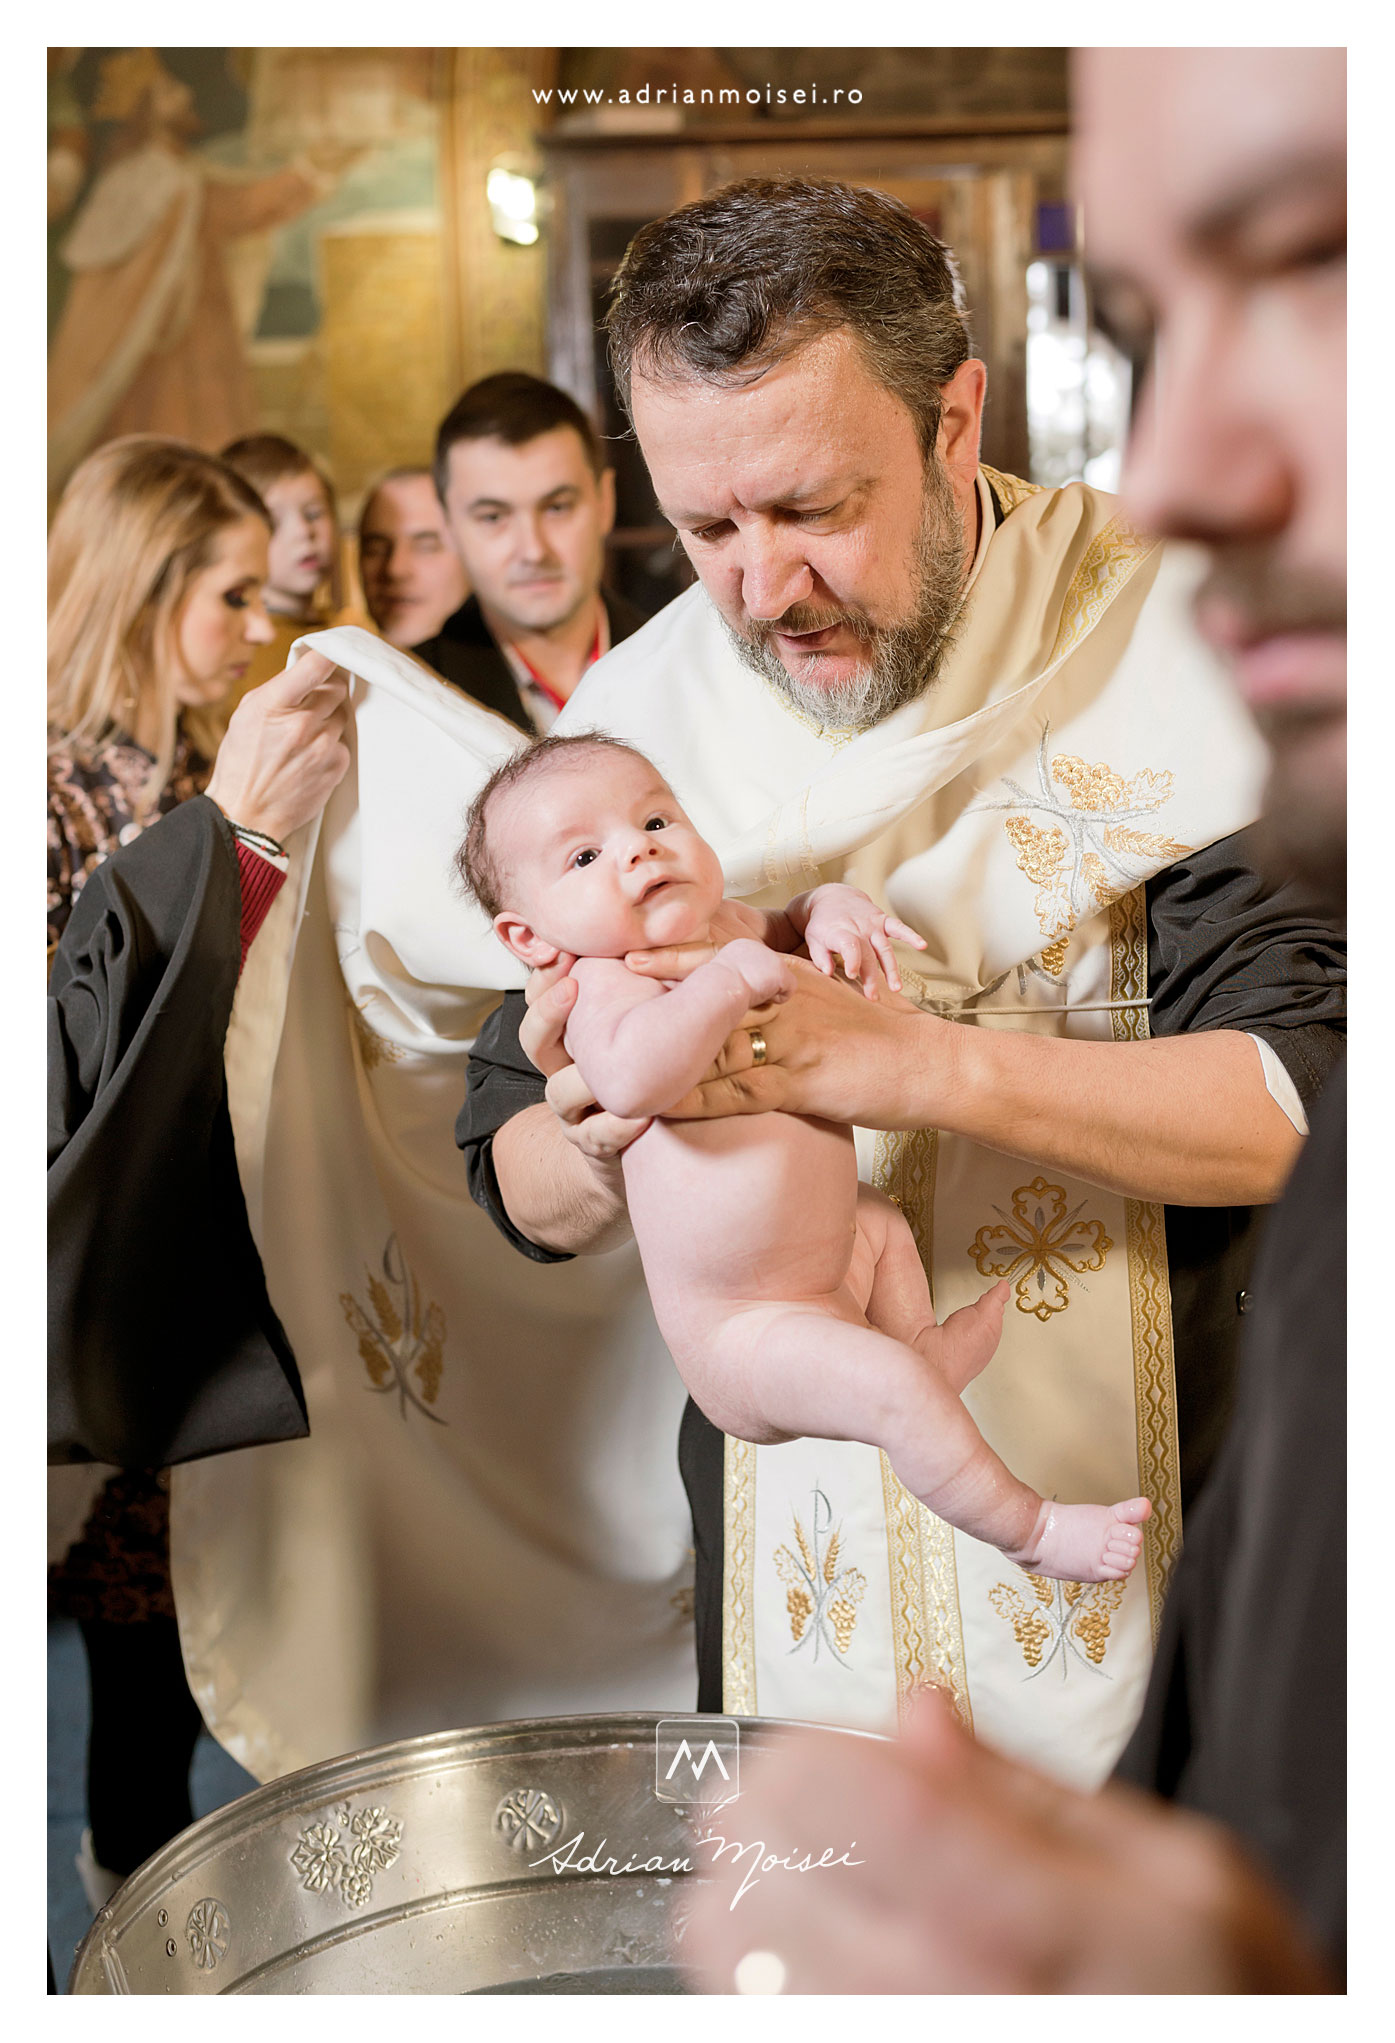 Preot cu un bebeluș în brațe pregătindu-se de botez la Iași, biserica Sfântul Nicolae Domnesc